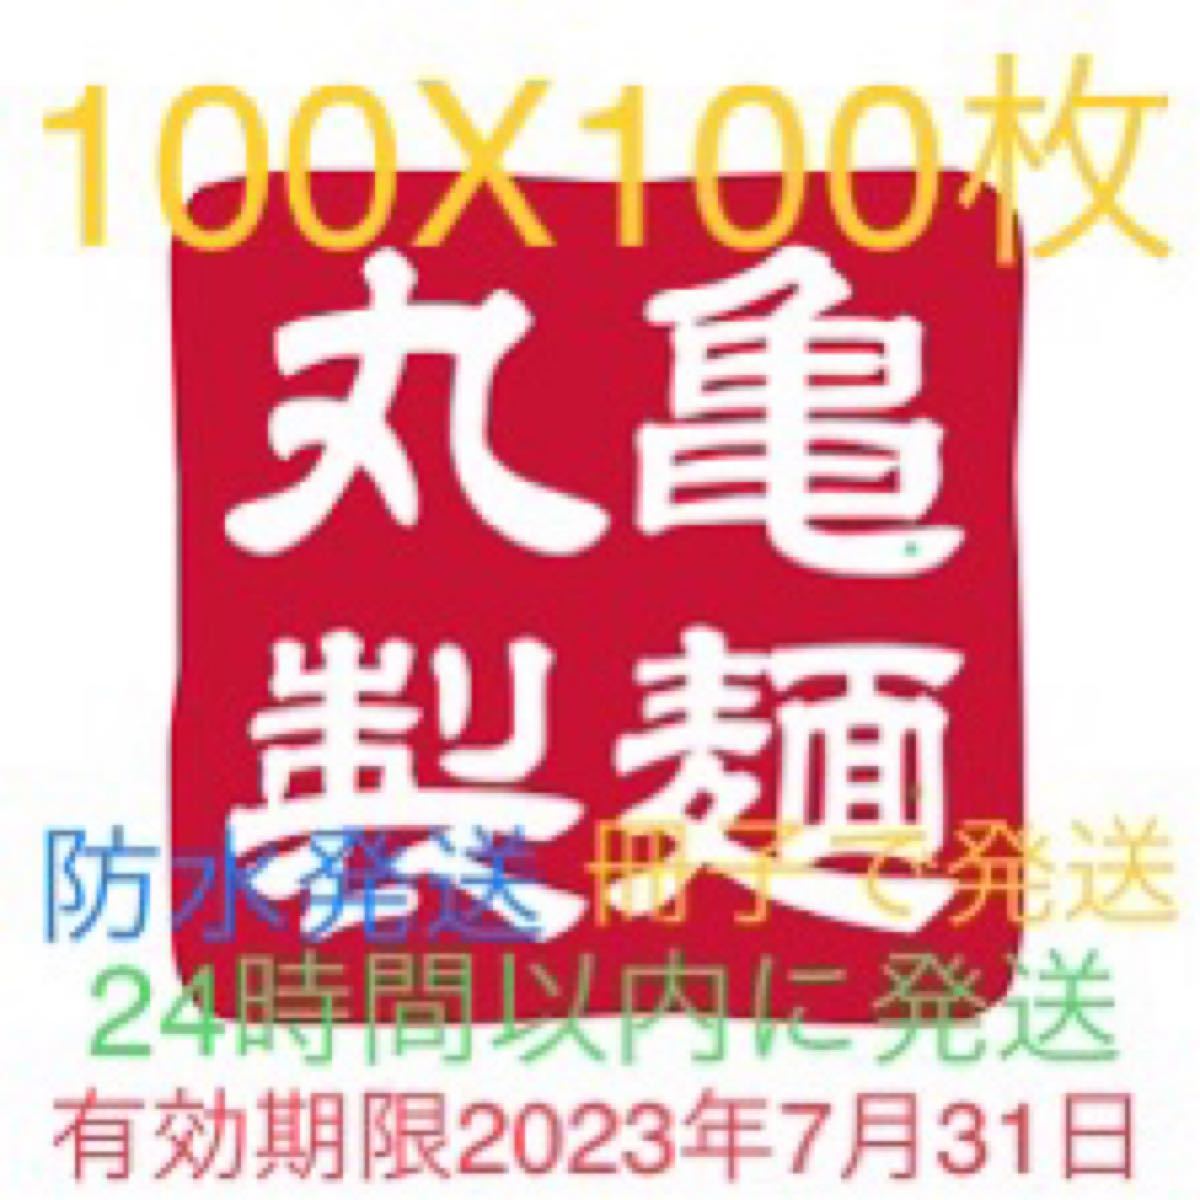 丸亀製麺 トリドール 100X100 1